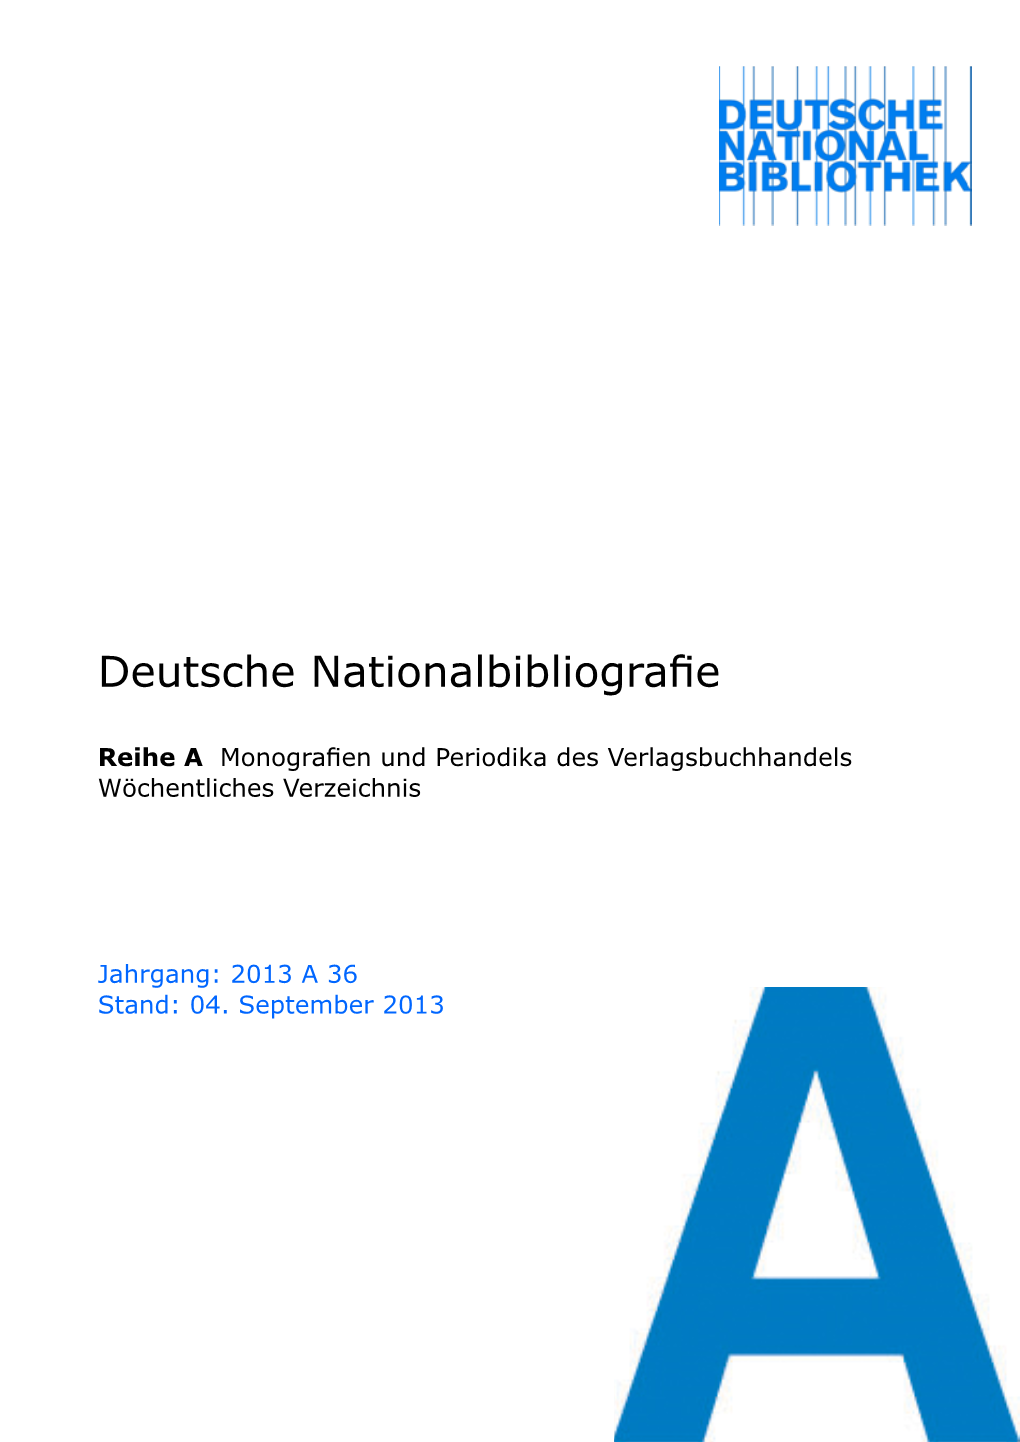 Deutsche Nationalbibliografie 2013 a 36